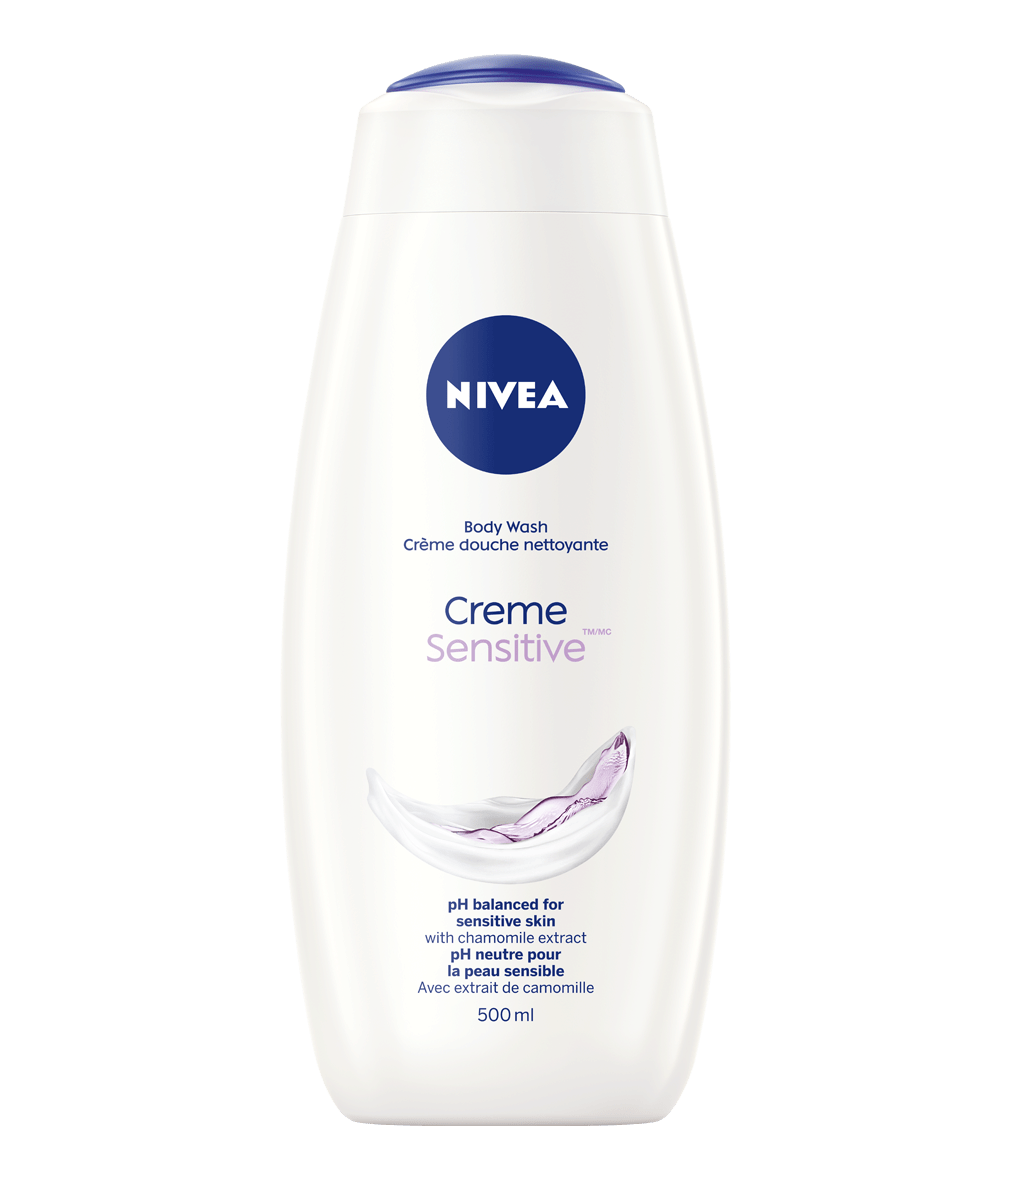 NIVEA Crème douche nettoyante Sensitive (TM/MC)